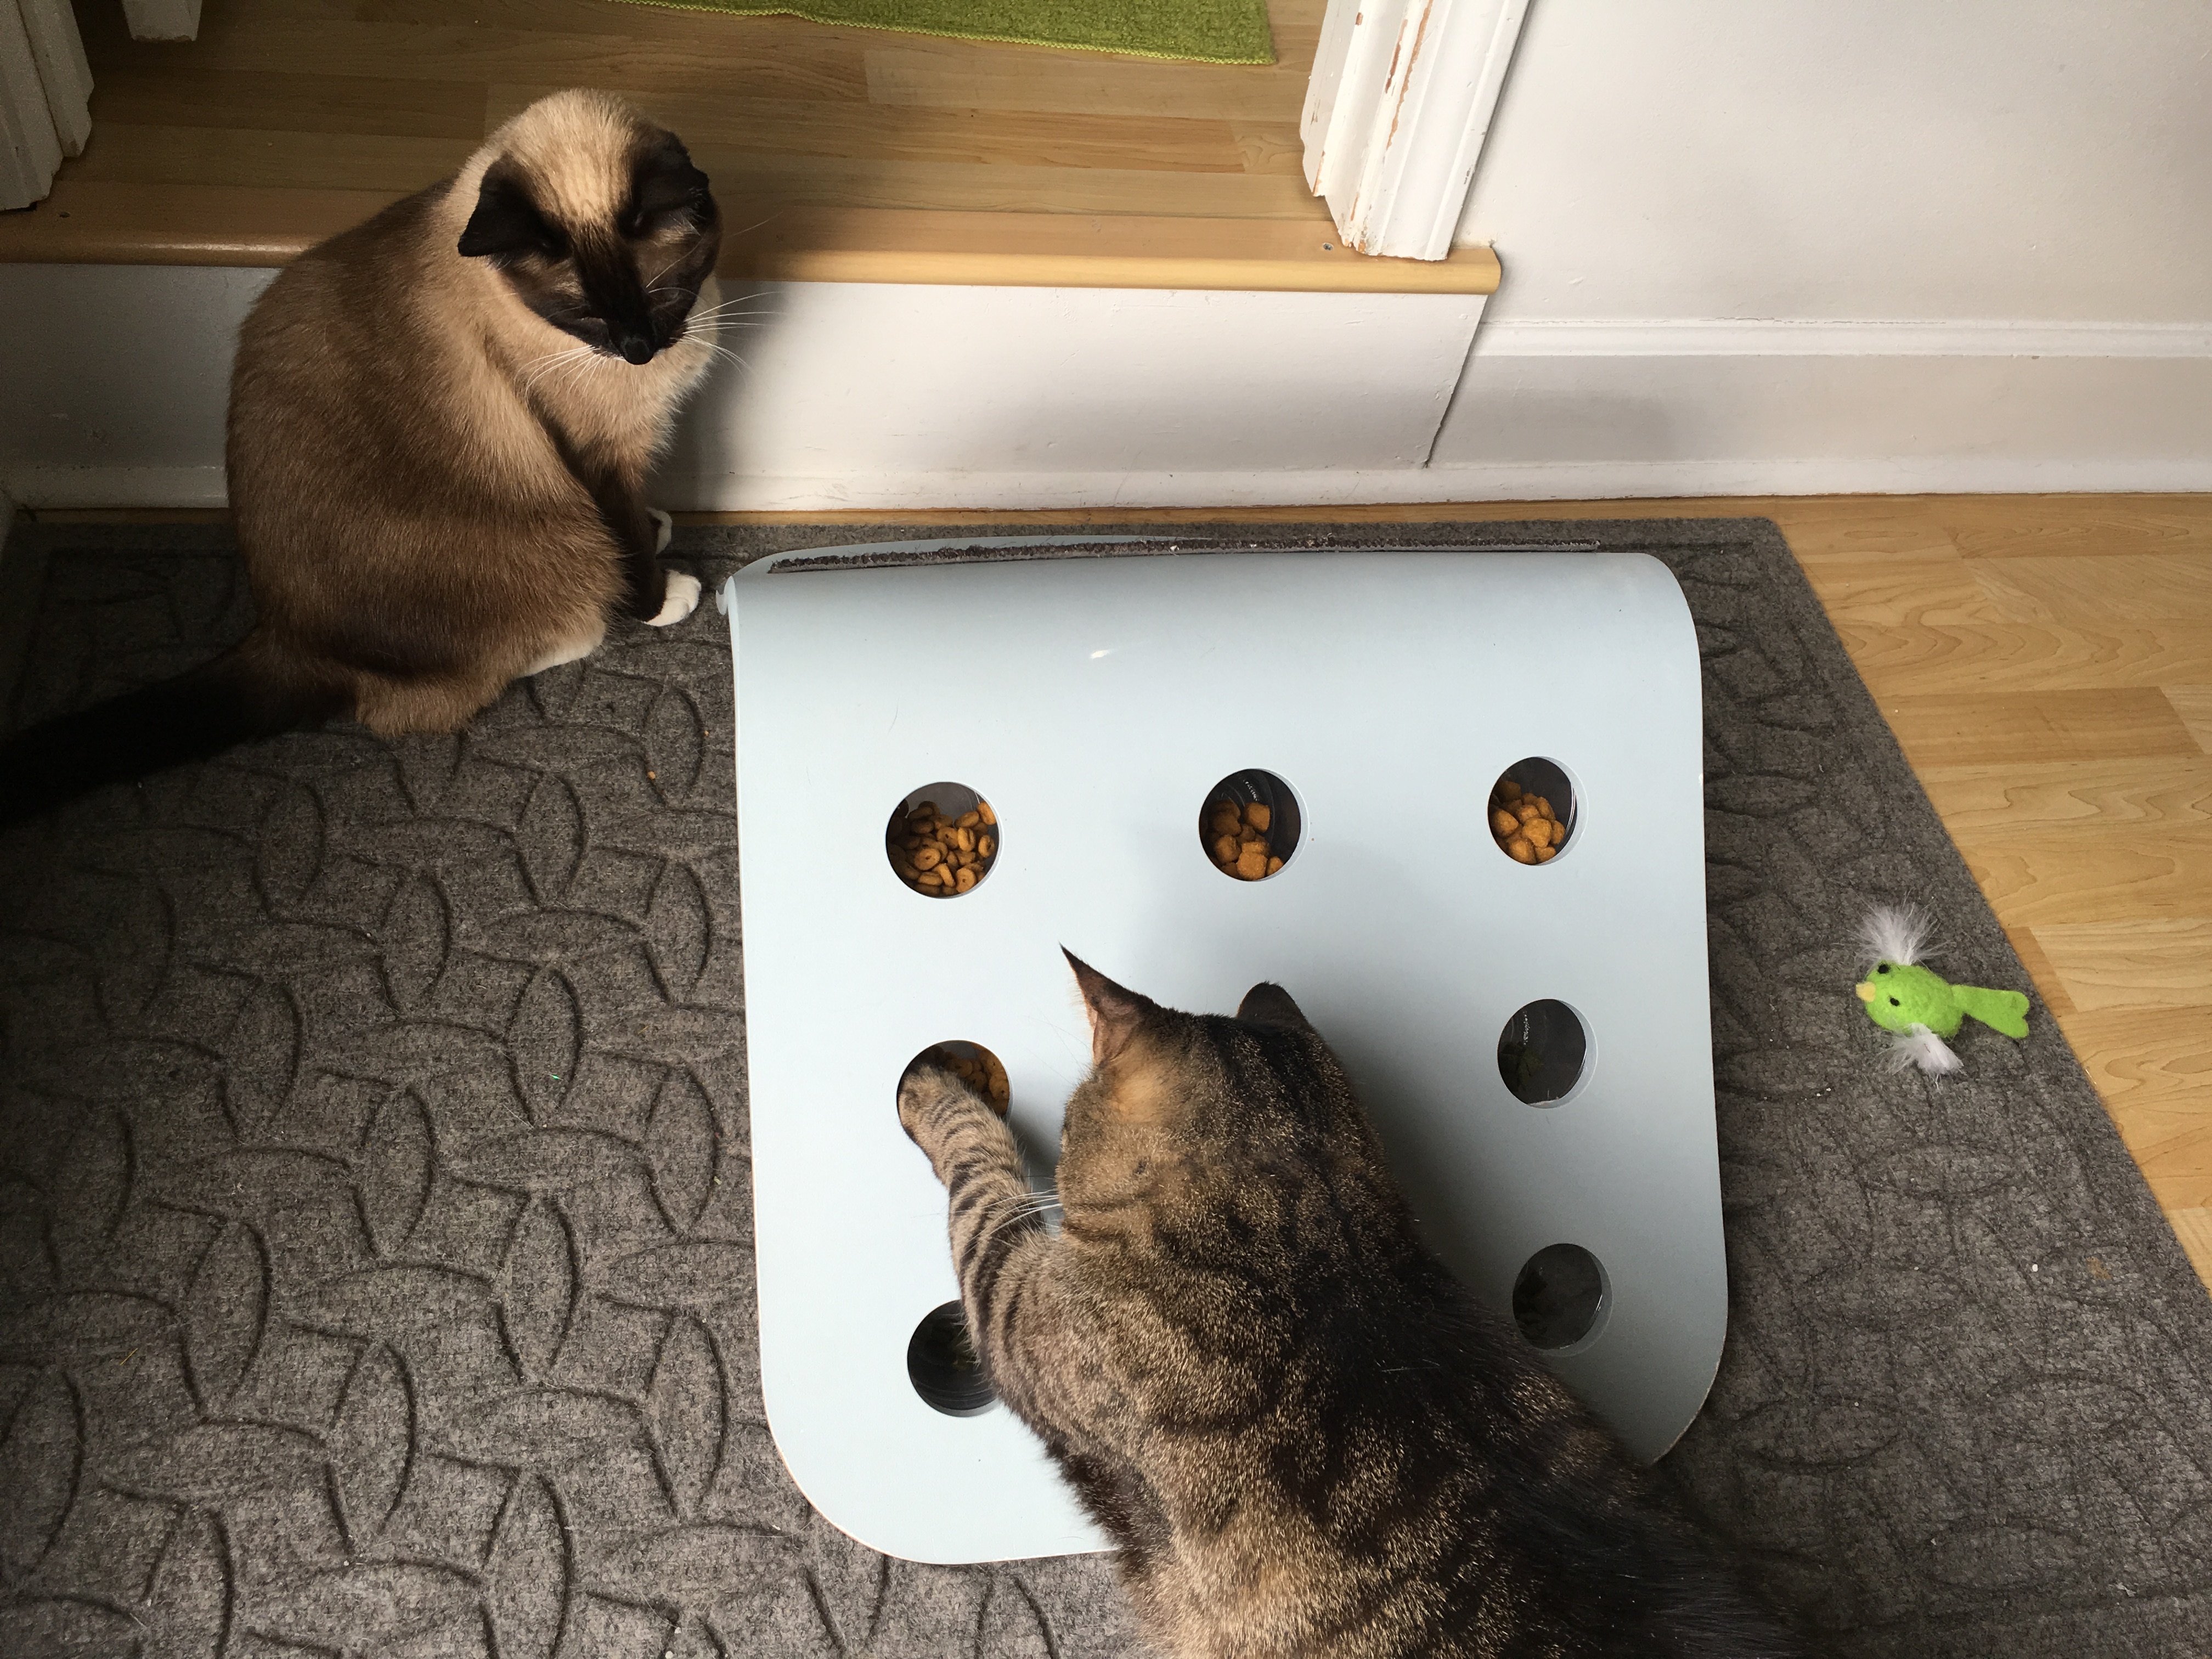 Cat Food Puzzle